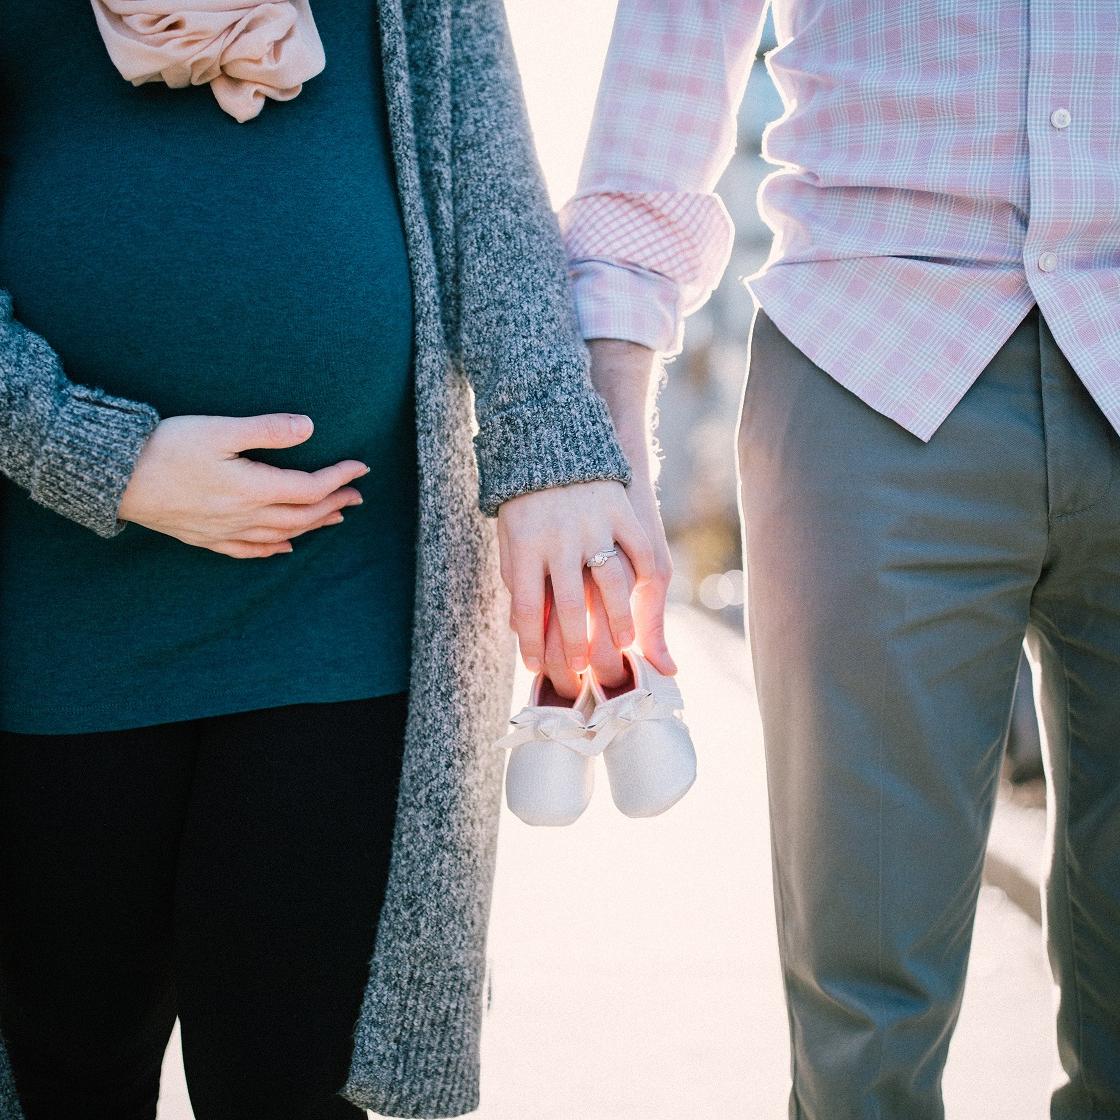 Γράμμαστον άντρα μου: Σε ευχαριστώ που αγαπάς το σώμα μου, ακόμα και στον ένατο μήνα της εγκυμοσύνης μου